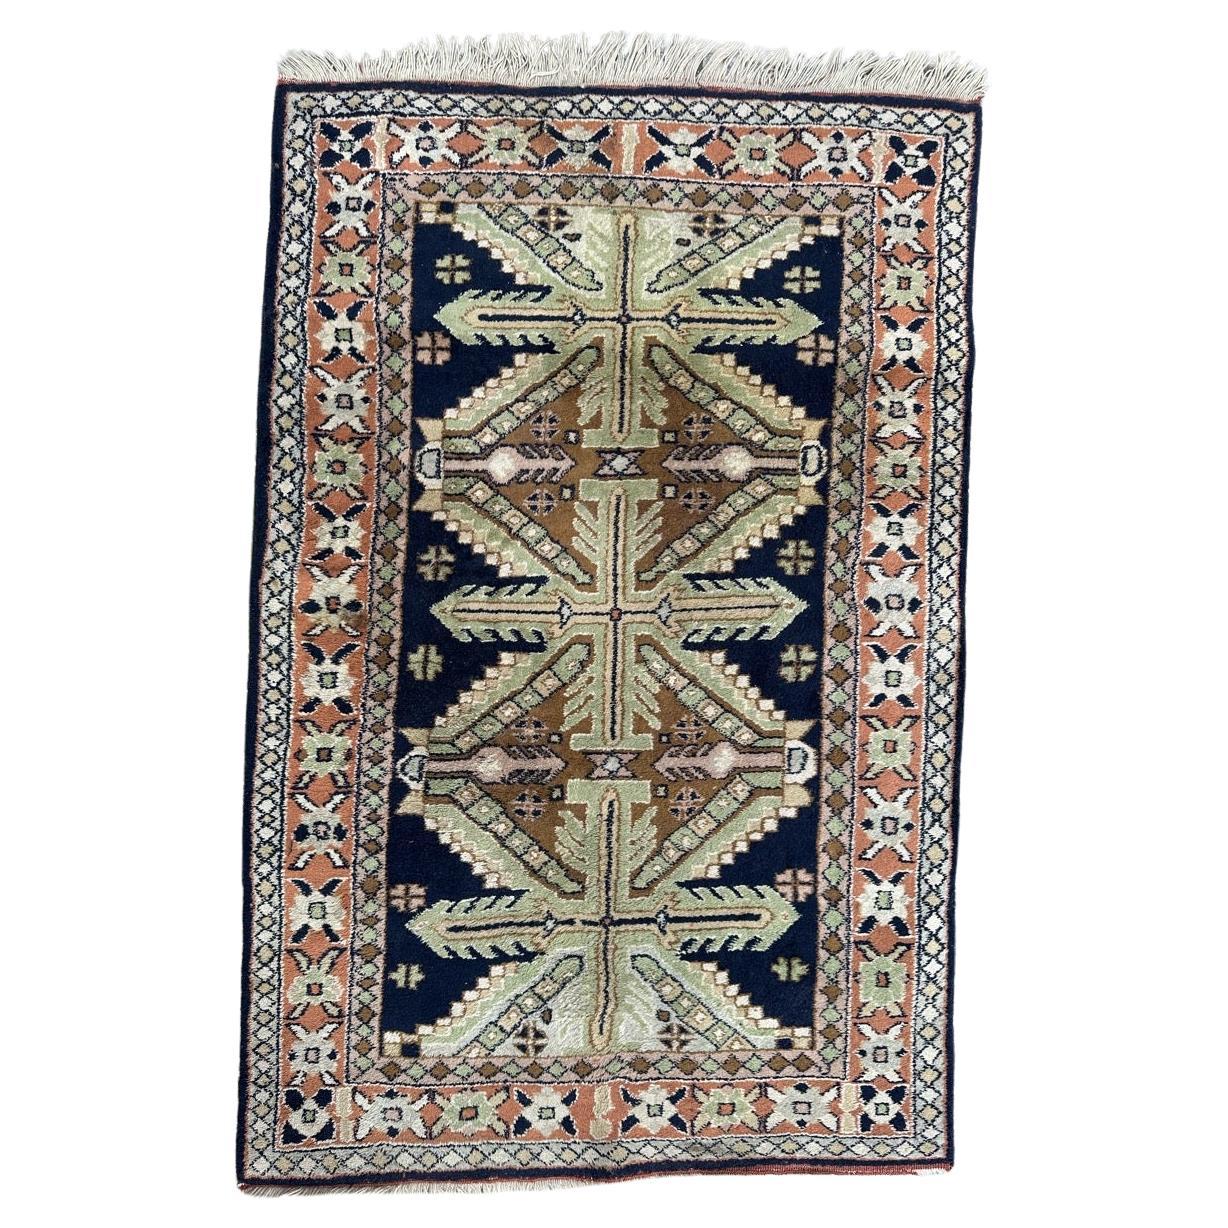 Bobyrugs hübscher türkischer Vintage-Teppich 